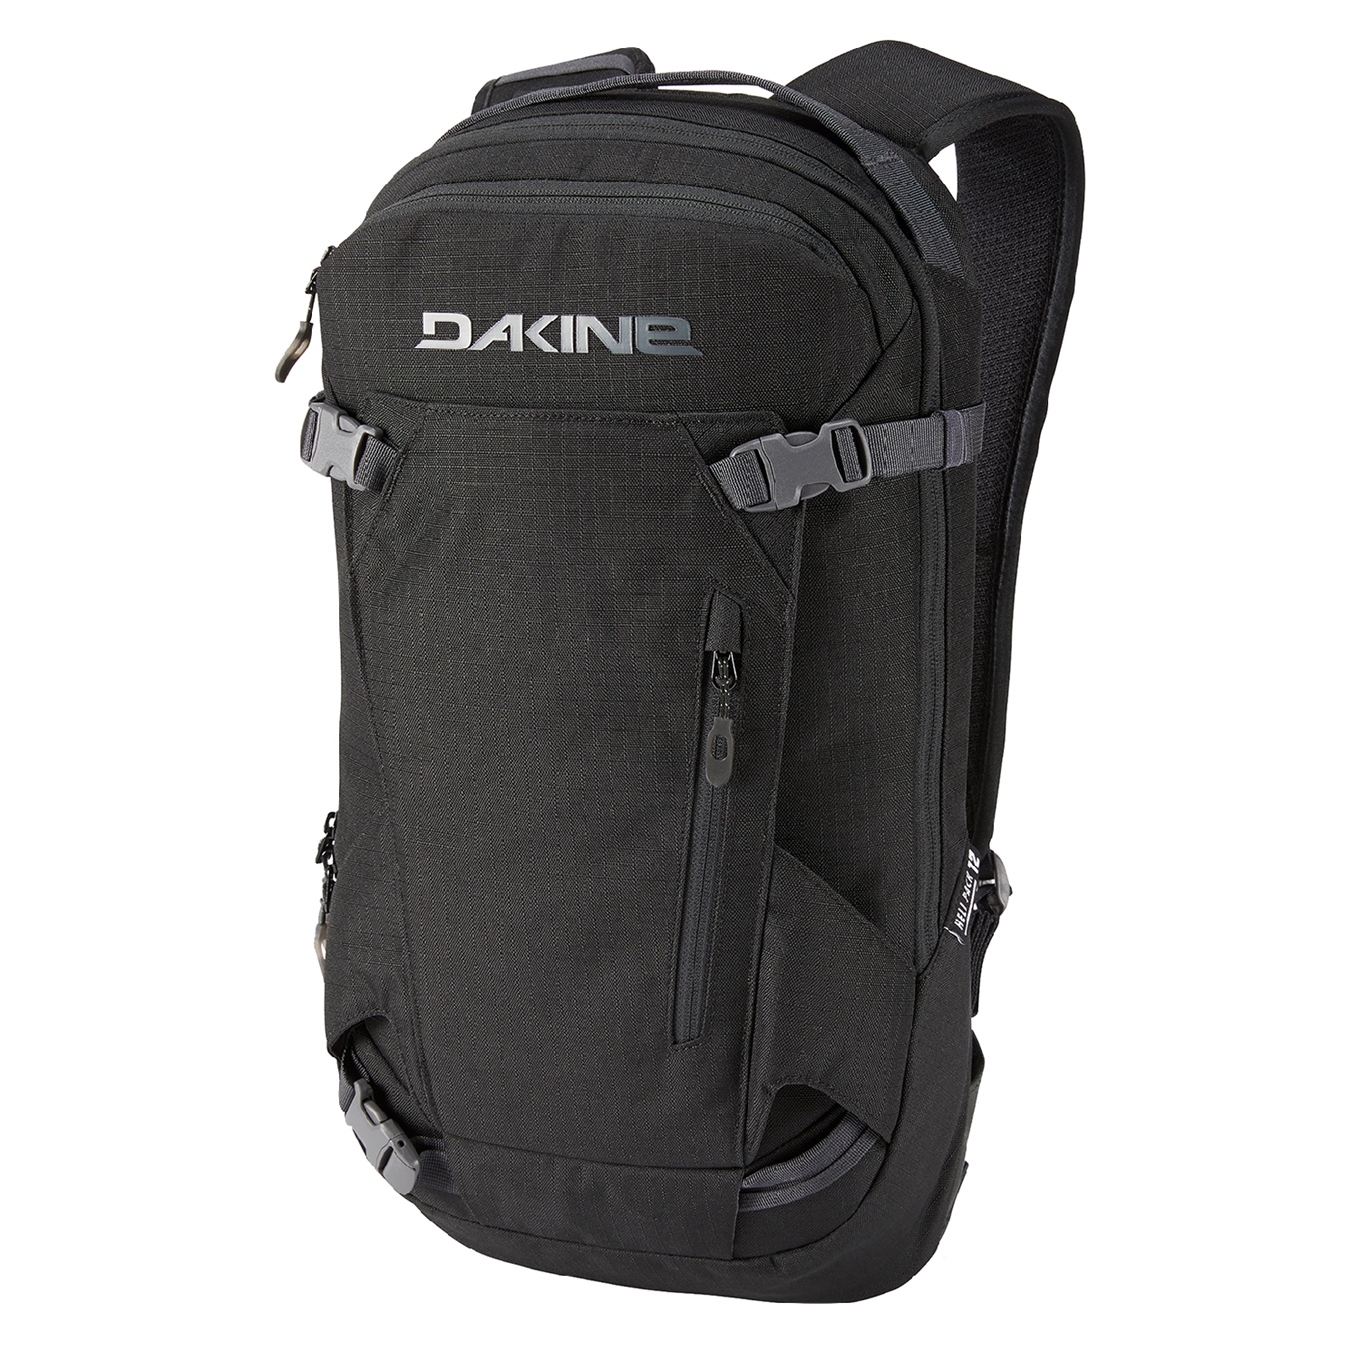 Dakine Heli Pack 12L Rugzak black II backpack